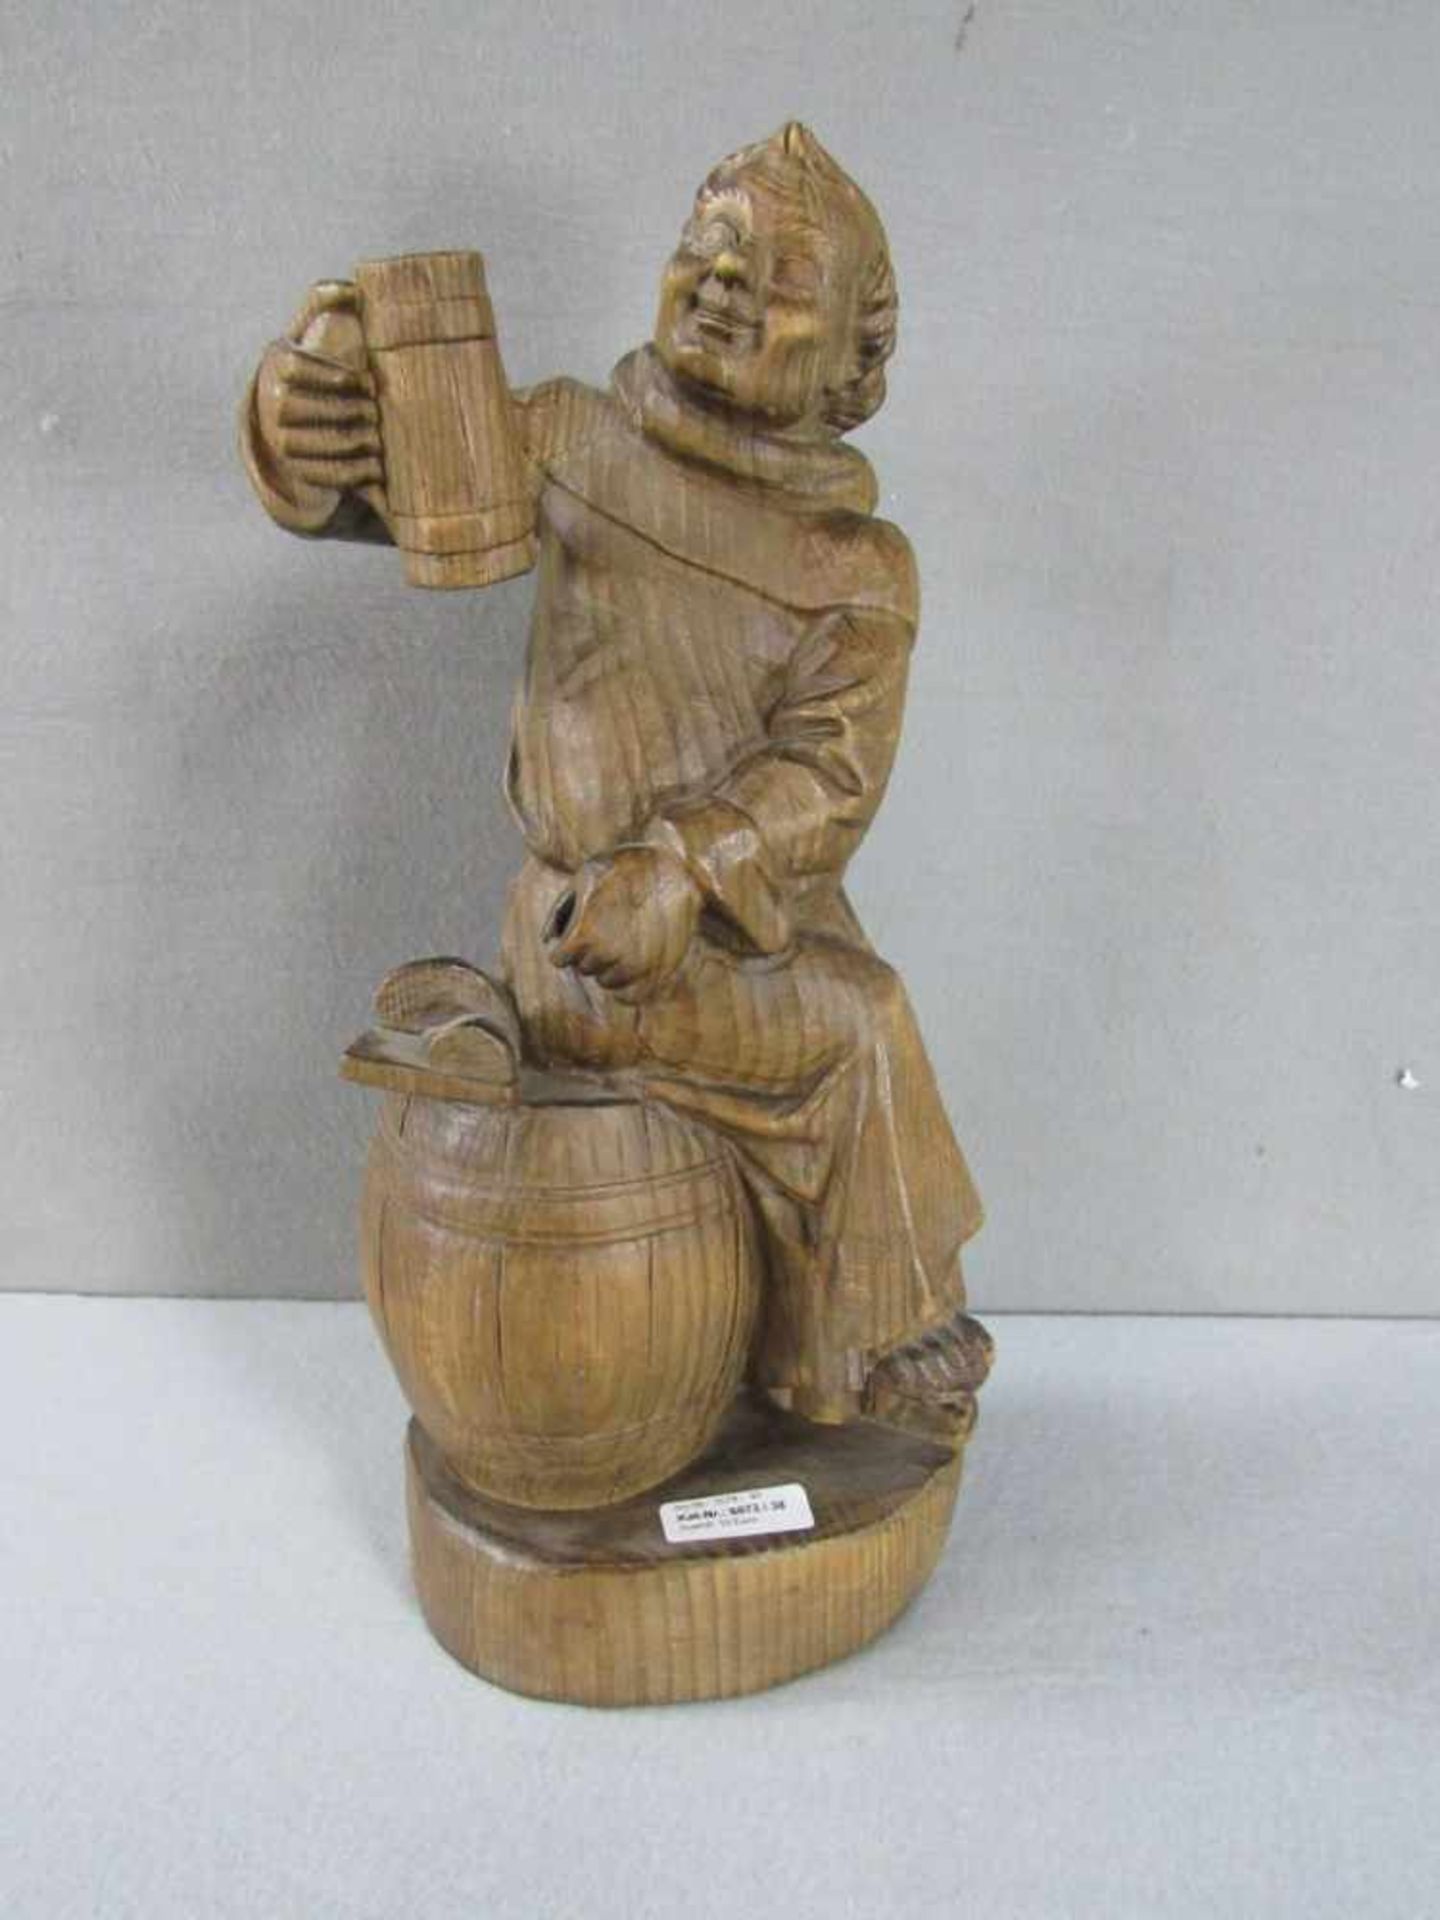 Holzfigur handgeschnitzt trinkender Mönch 50cm hoch